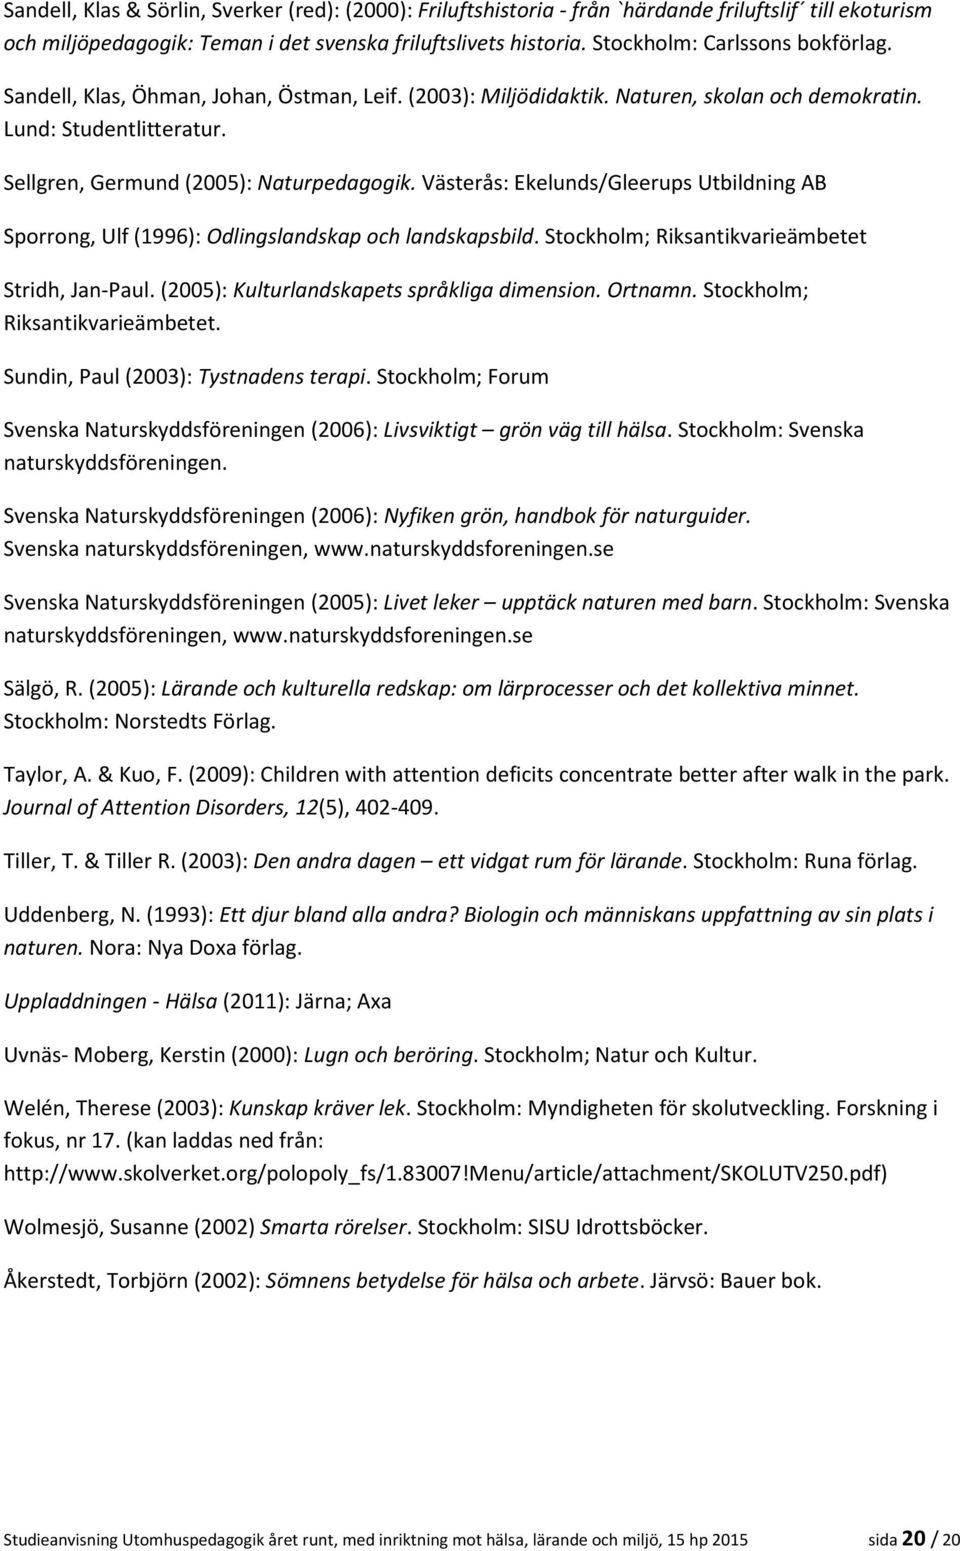 Västerås: Ekelunds/Gleerups Utbildning AB Sporrong, Ulf (1996): Odlingslandskap och landskapsbild. Stockholm; Riksantikvarieämbetet Stridh, Jan-Paul. (2005): Kulturlandskapets språkliga dimension.